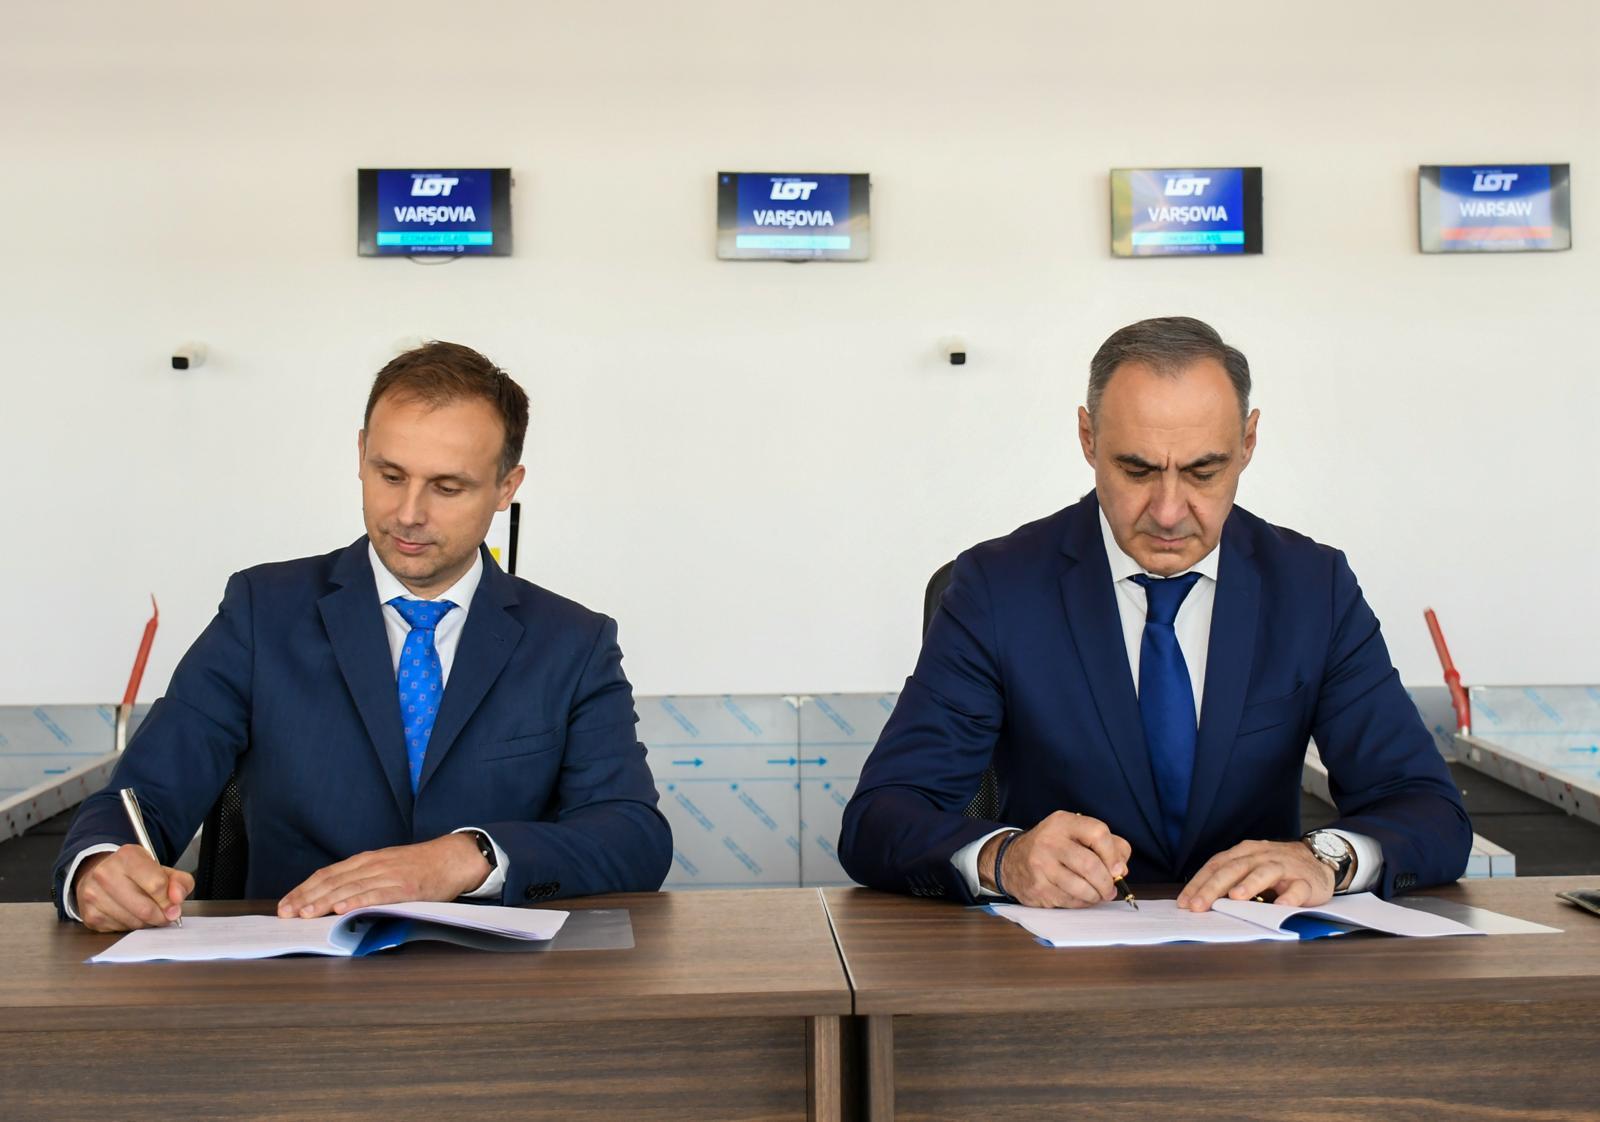 Consiliul Judeţean Bihor a încheiat un contract cu LOT Polish Airlines, pentru zboruri pe ruta Oradea – Varşovia, de patru ori pe săptămână / Cursele, din 3 iunie